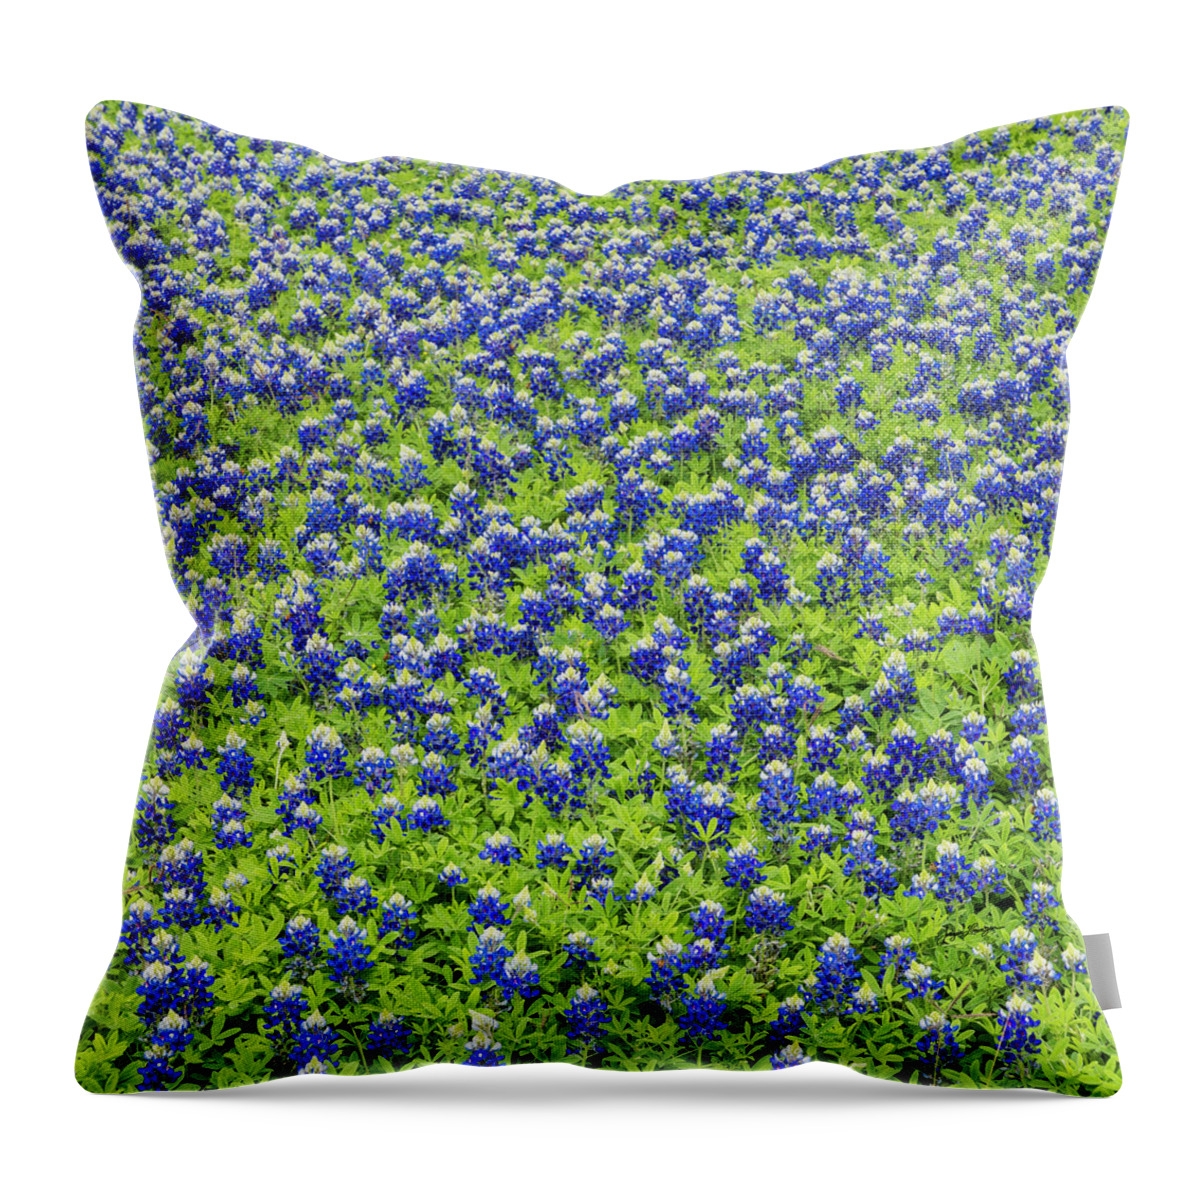 Texas Bluebonnets Throw Pillow featuring the photograph Beautiful Bluebonnet Patch by Jurgen Lorenzen